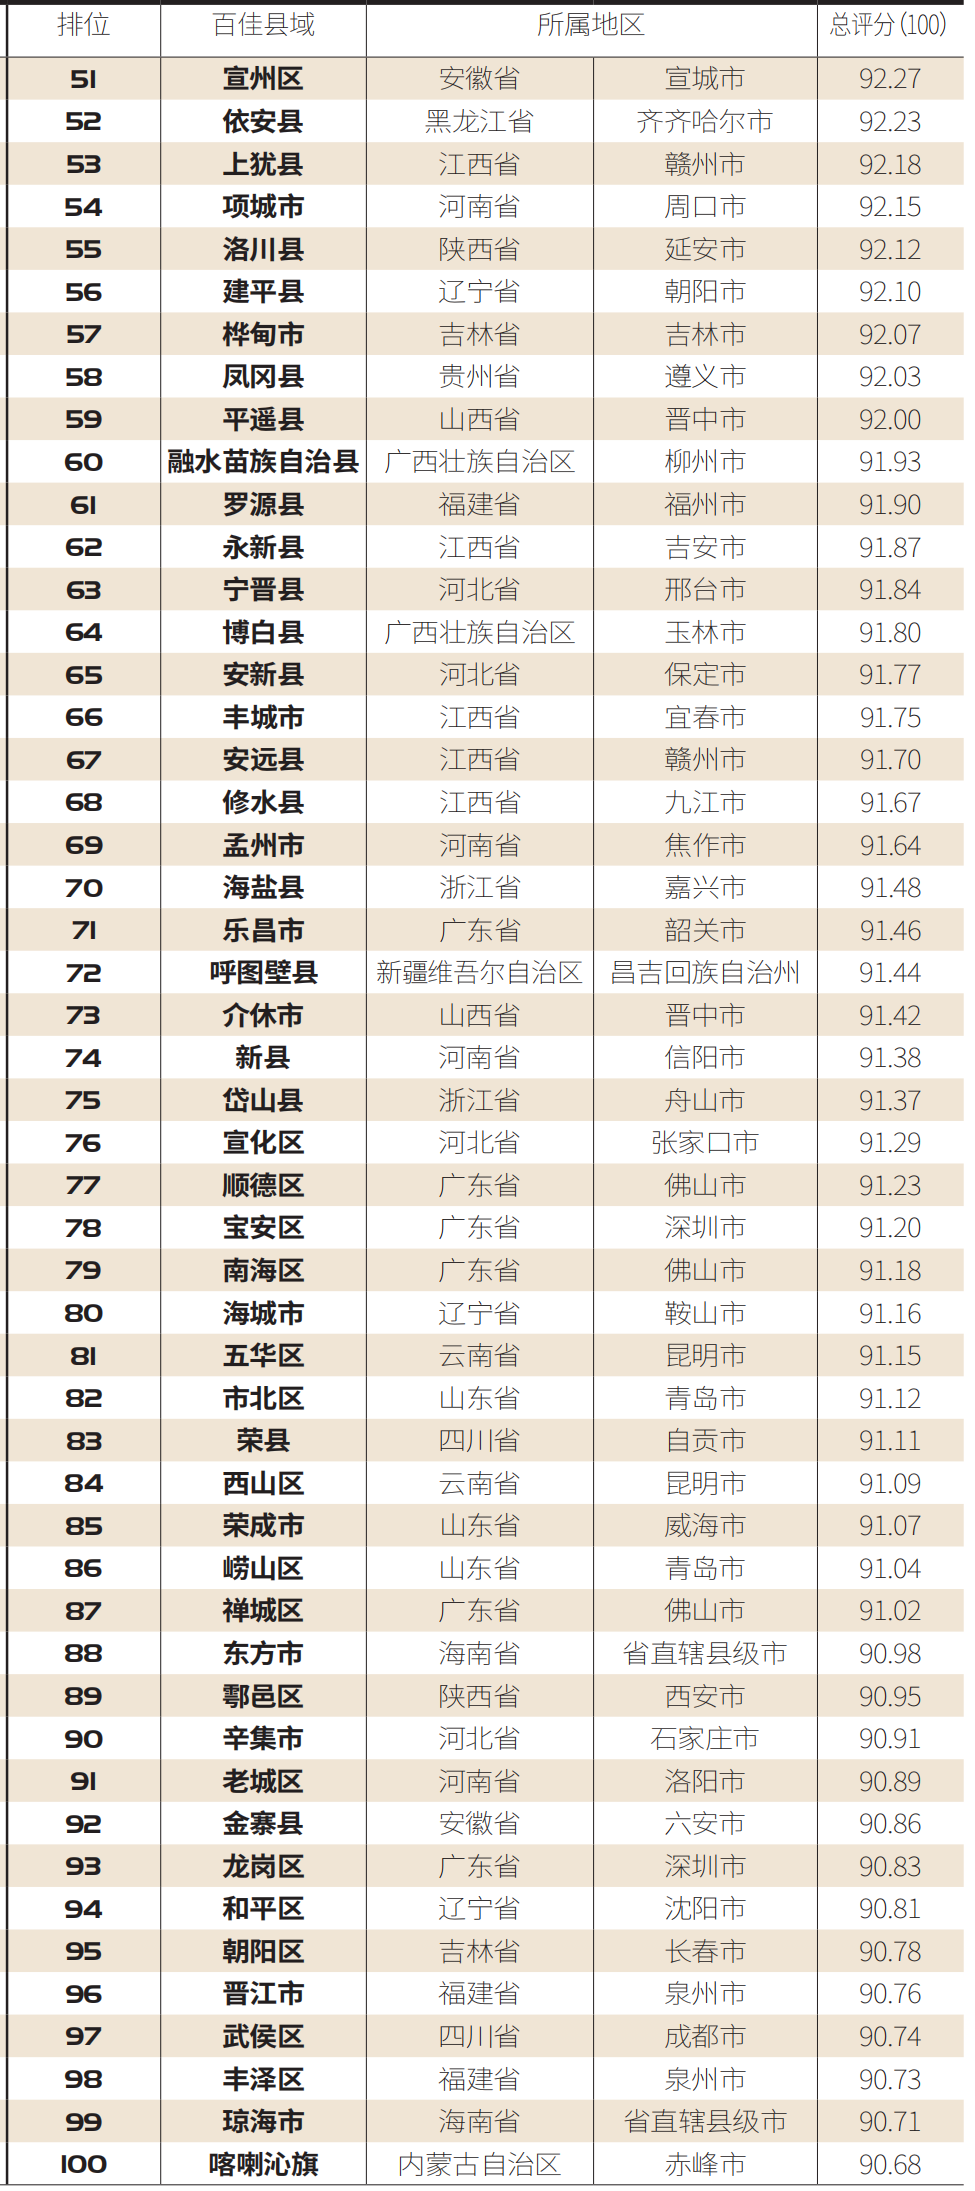 【百县榜】“2020中国职业教育百佳县市”榜单发布